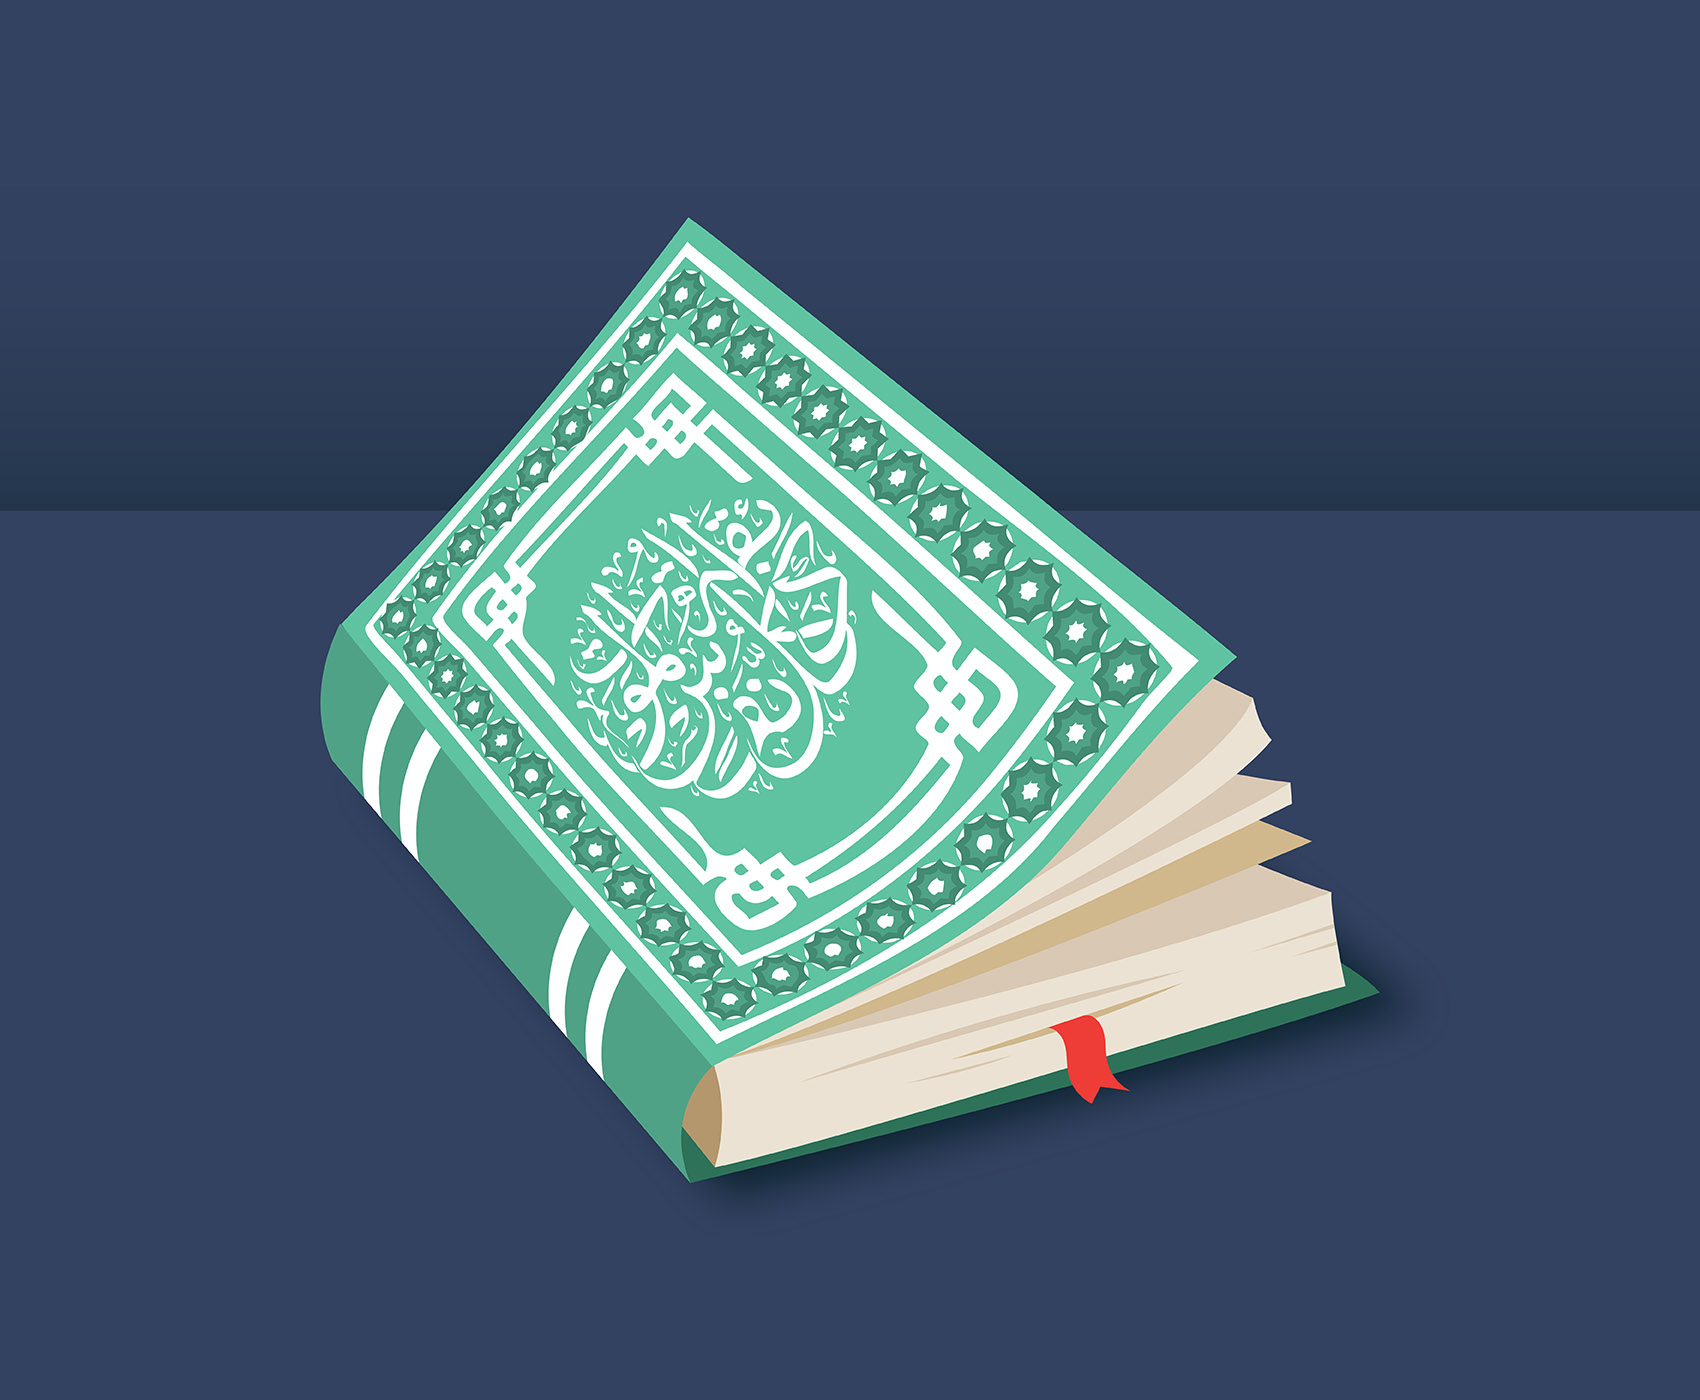  Al  Quran  Illustration 362167 Download Free Vectors 